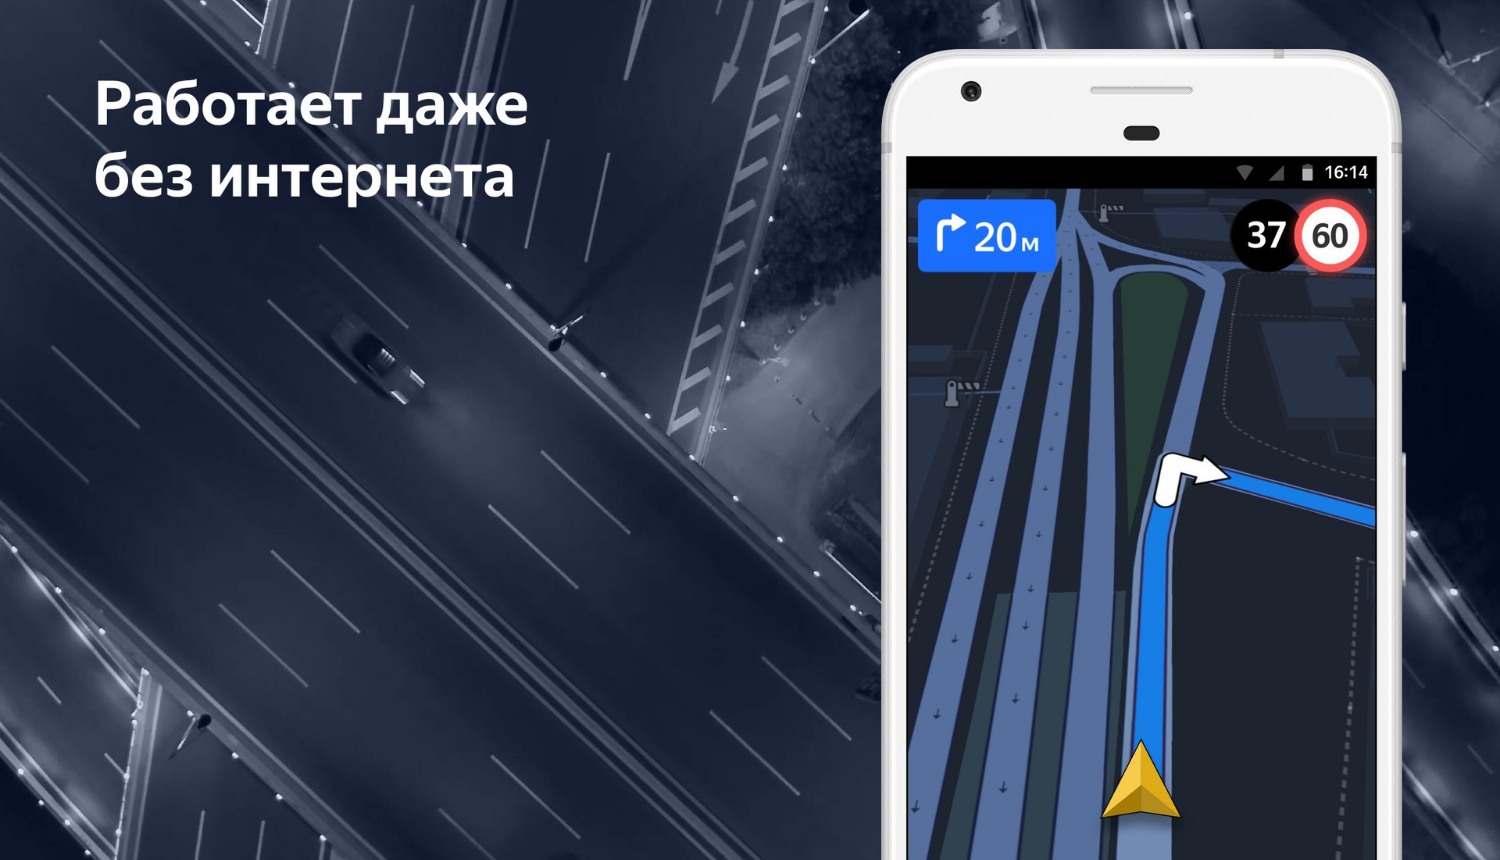 “Яндекс.Навигатор” может работать без интернета